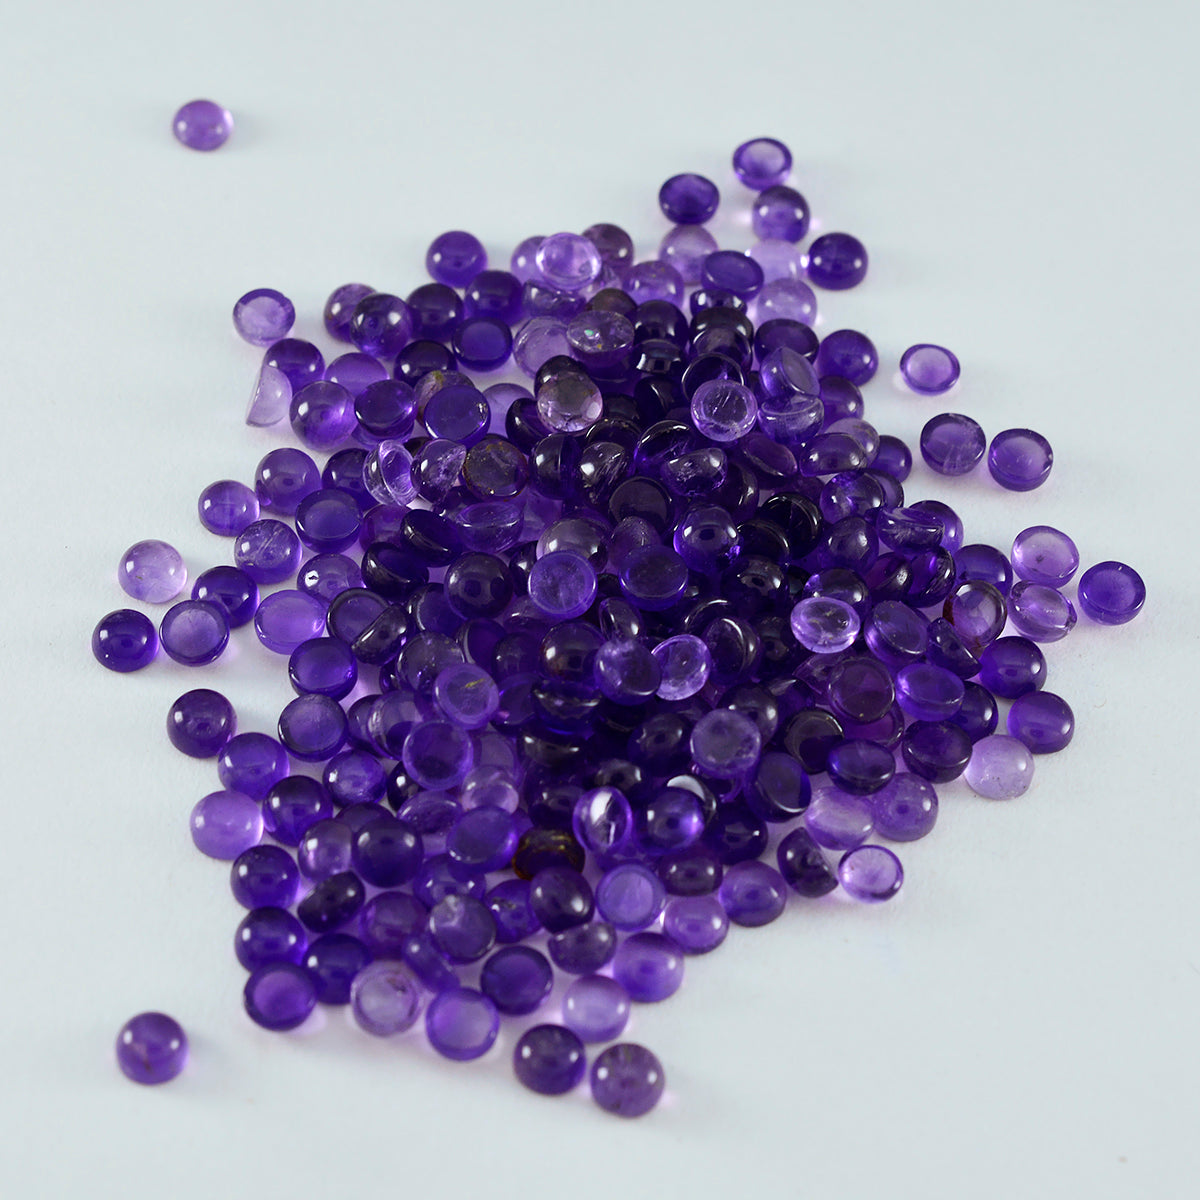 riyogems 1шт фиолетовый аметист кабошон 3x3 мм круглая форма сладкий качественный драгоценный камень